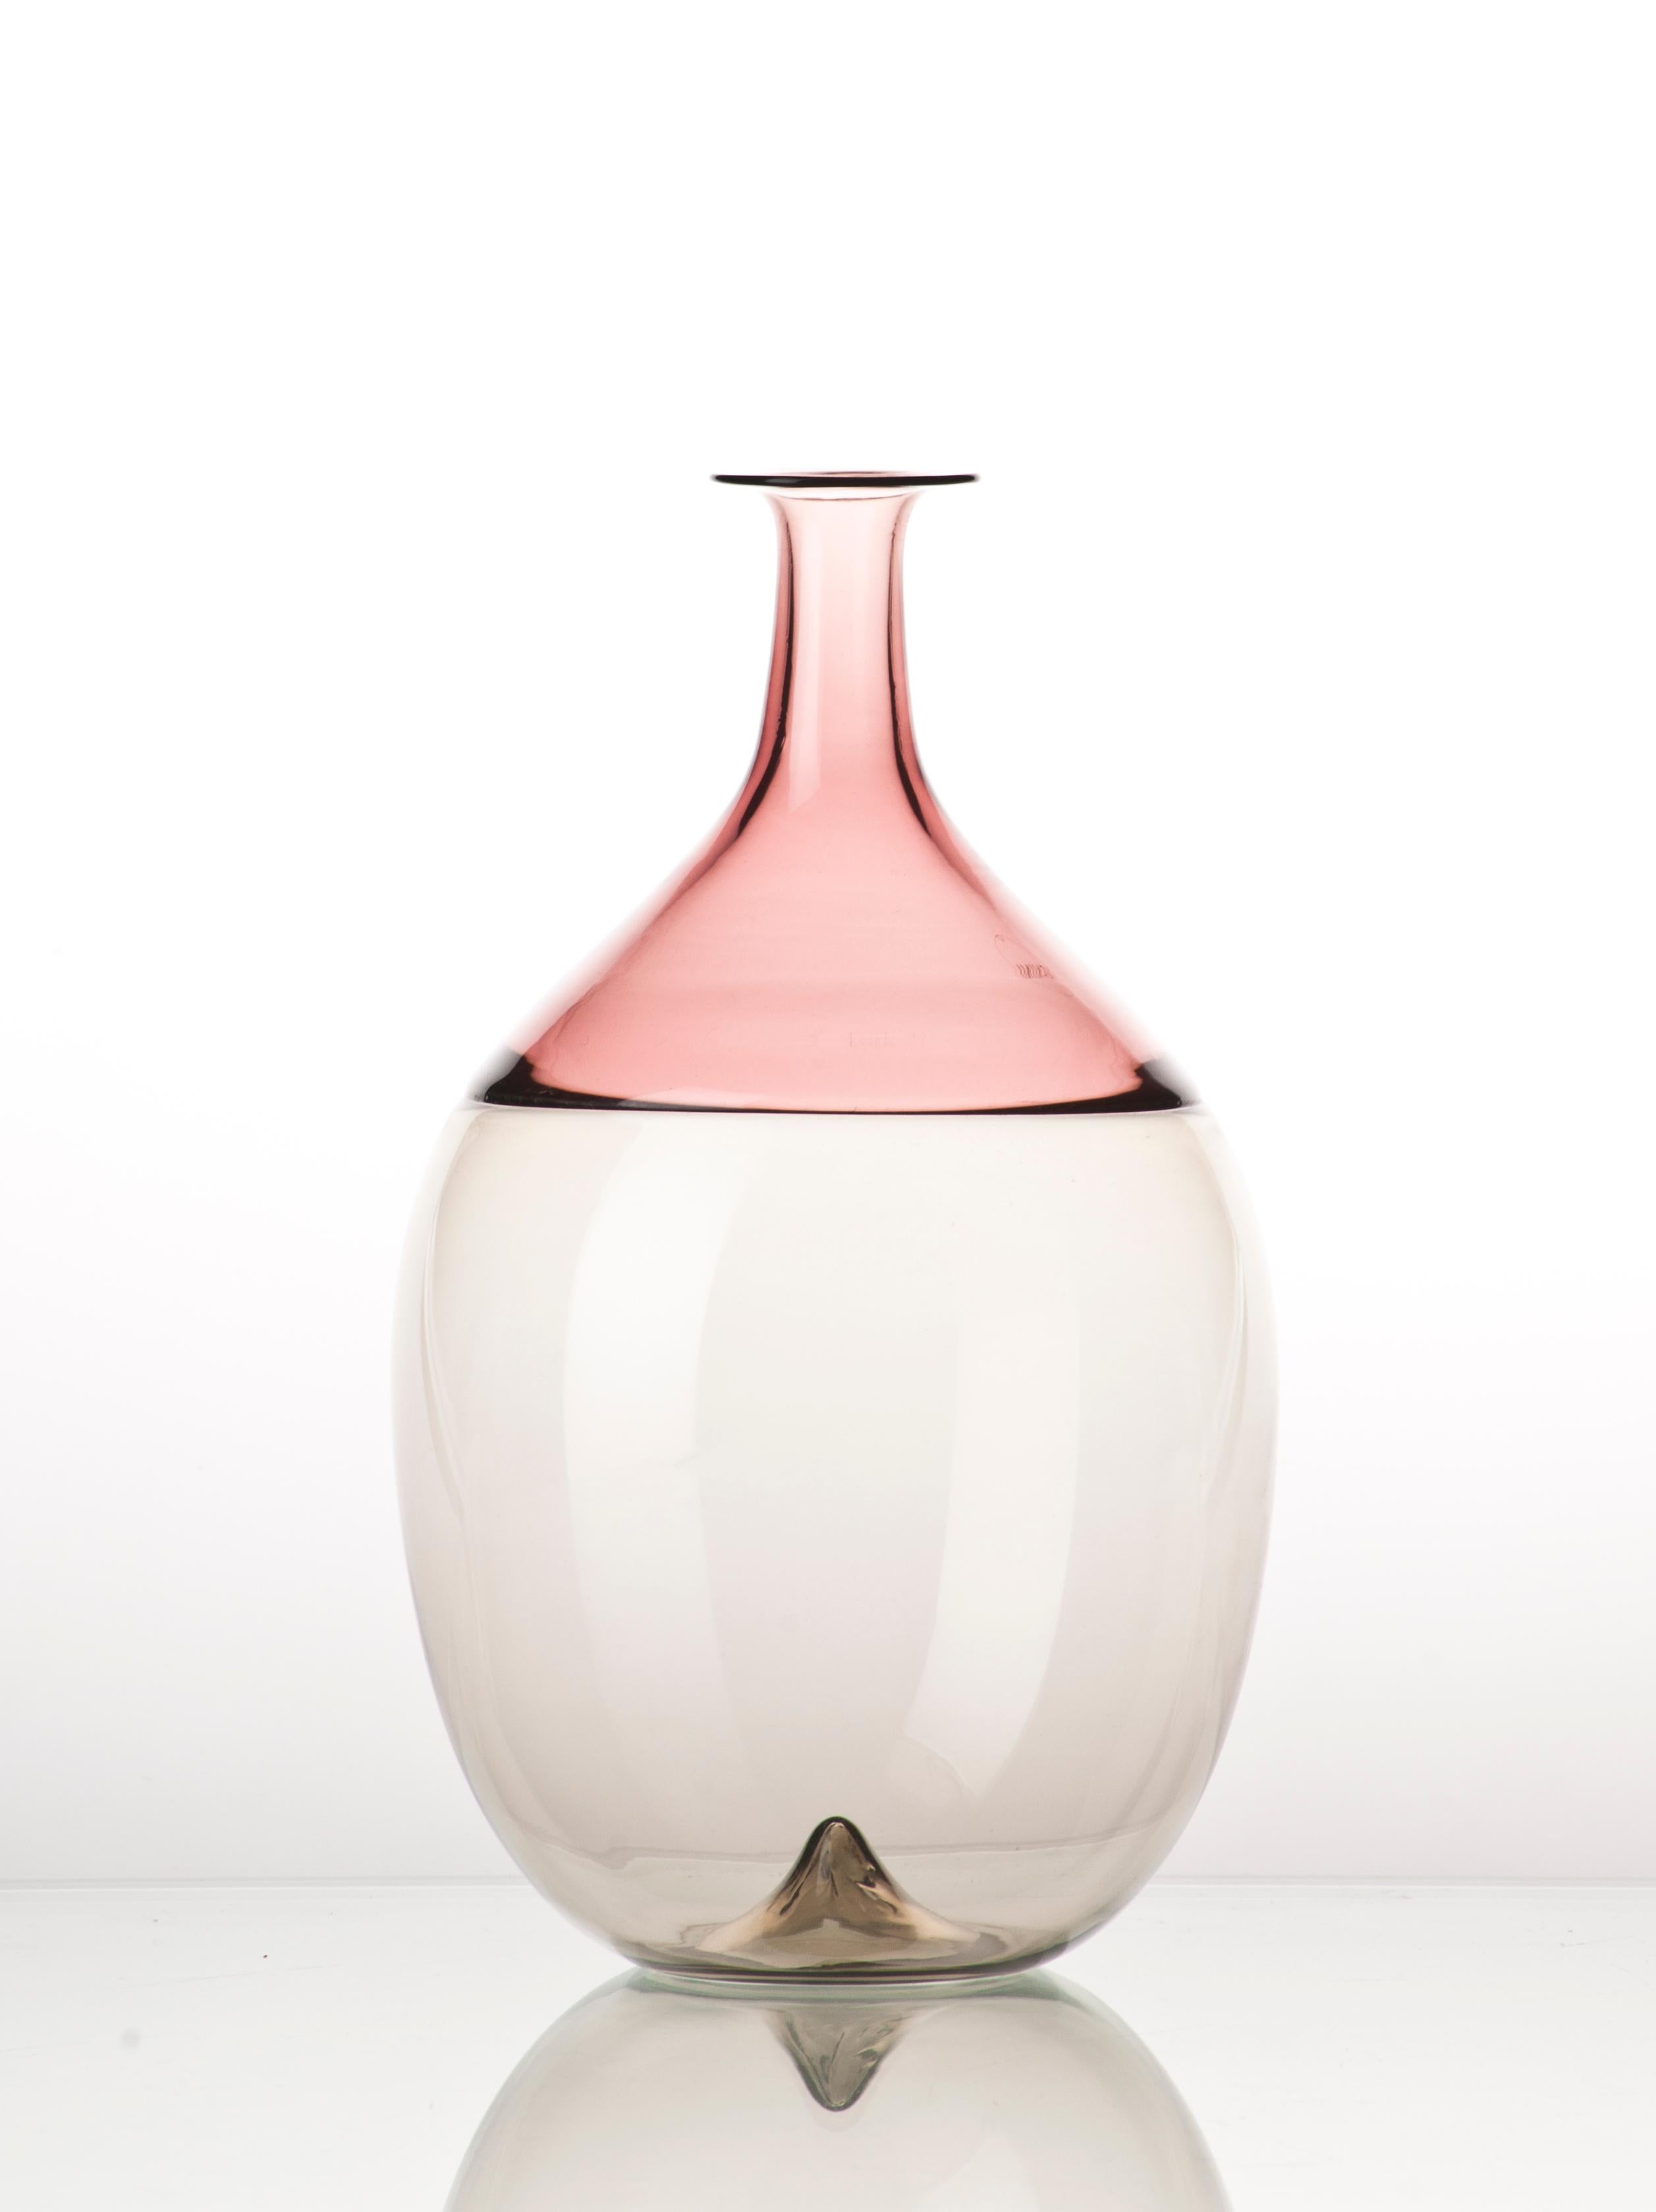 La série de vases Bolle Glass, conçue par Tapio Wirkkala et fabriquée par Venini, a été dessinée à l'origine en 1966. Des chefs-d'œuvre iconiques disponibles en 5 formes différentes. Utilisation intérieure uniquement.

Dimensions : Ø 13 cm, H 21